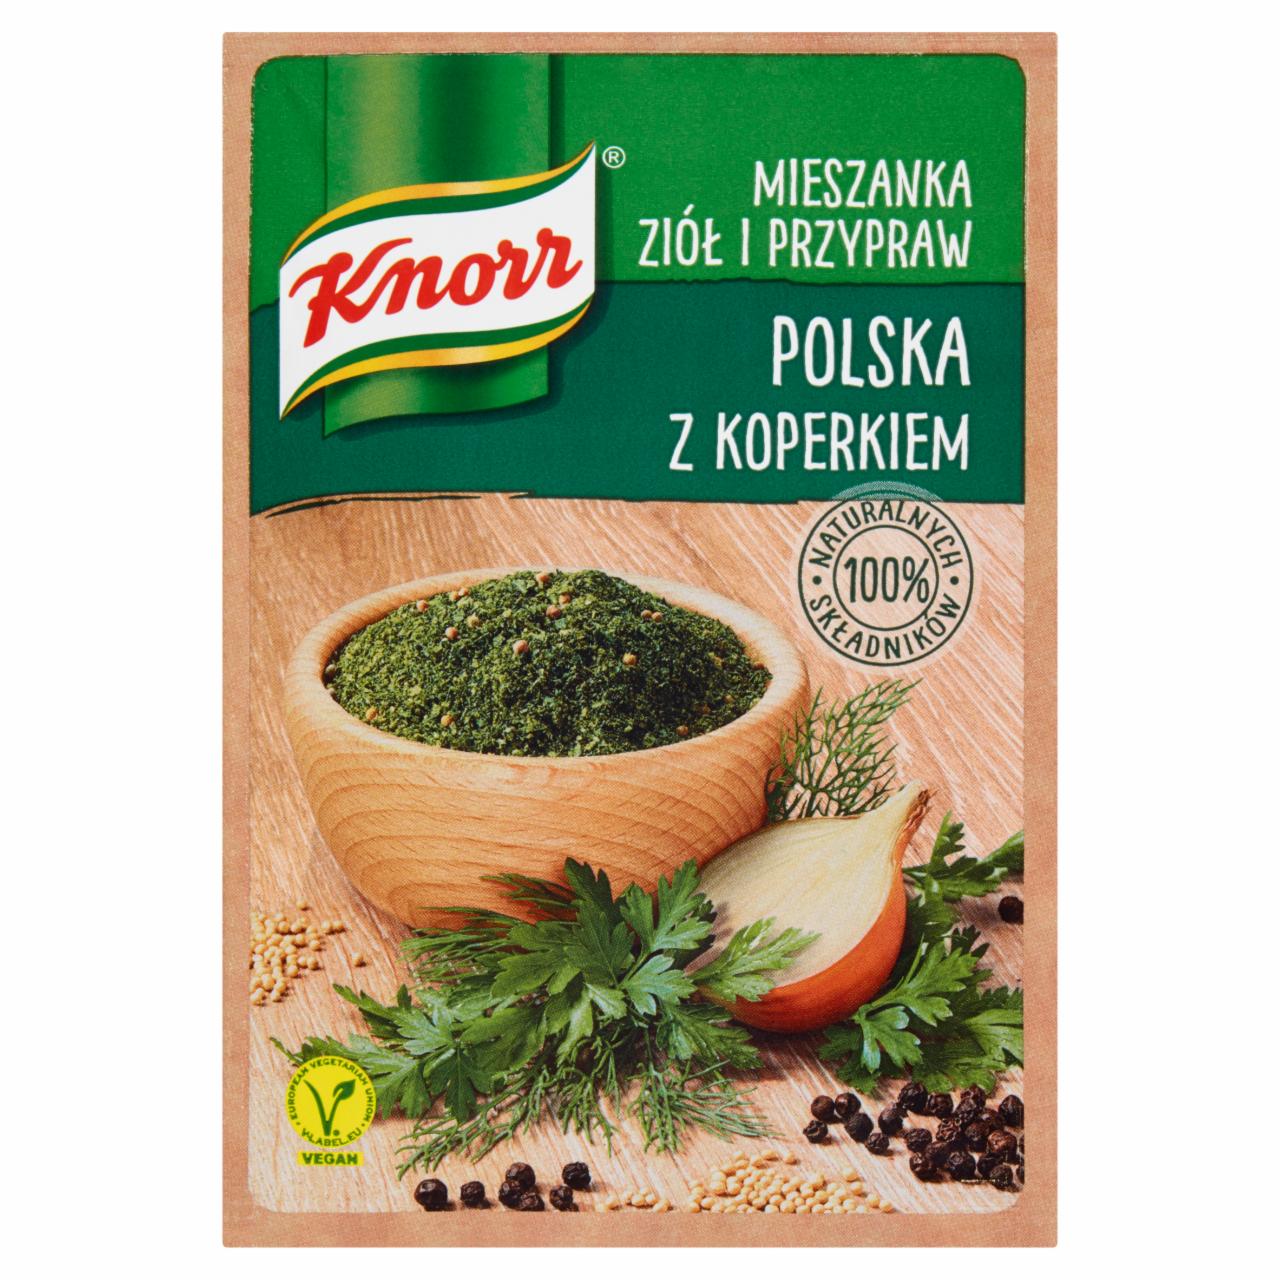 Zdjęcia - Knorr Mieszanka ziół i przypraw polska z koperkiem 13,5 g